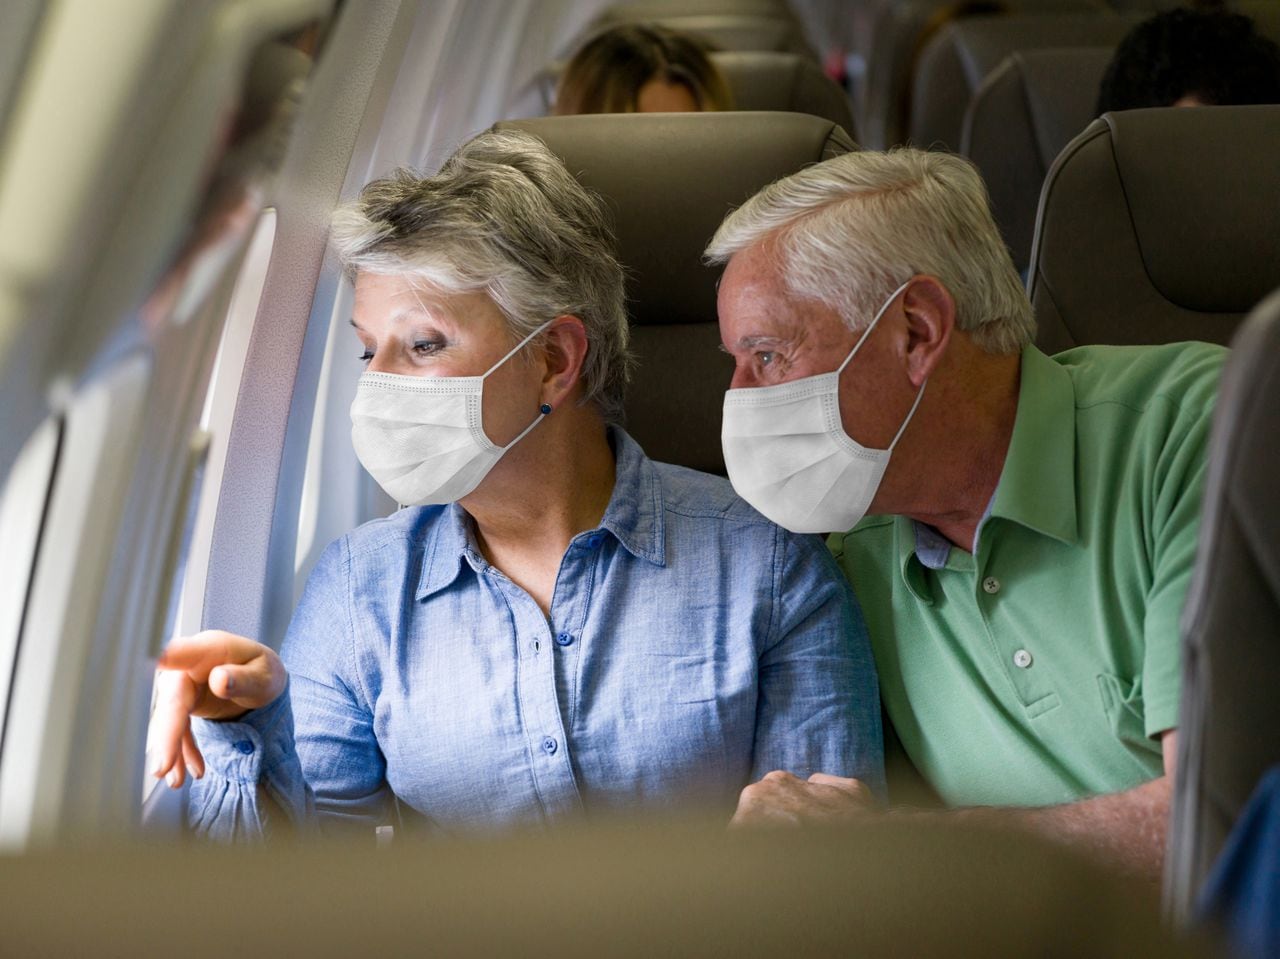 Pareja de ancianos latinoamericanos viajando en avión con mascarillas y mirando por la ventana - viaje durante la pandemia de COVID-19